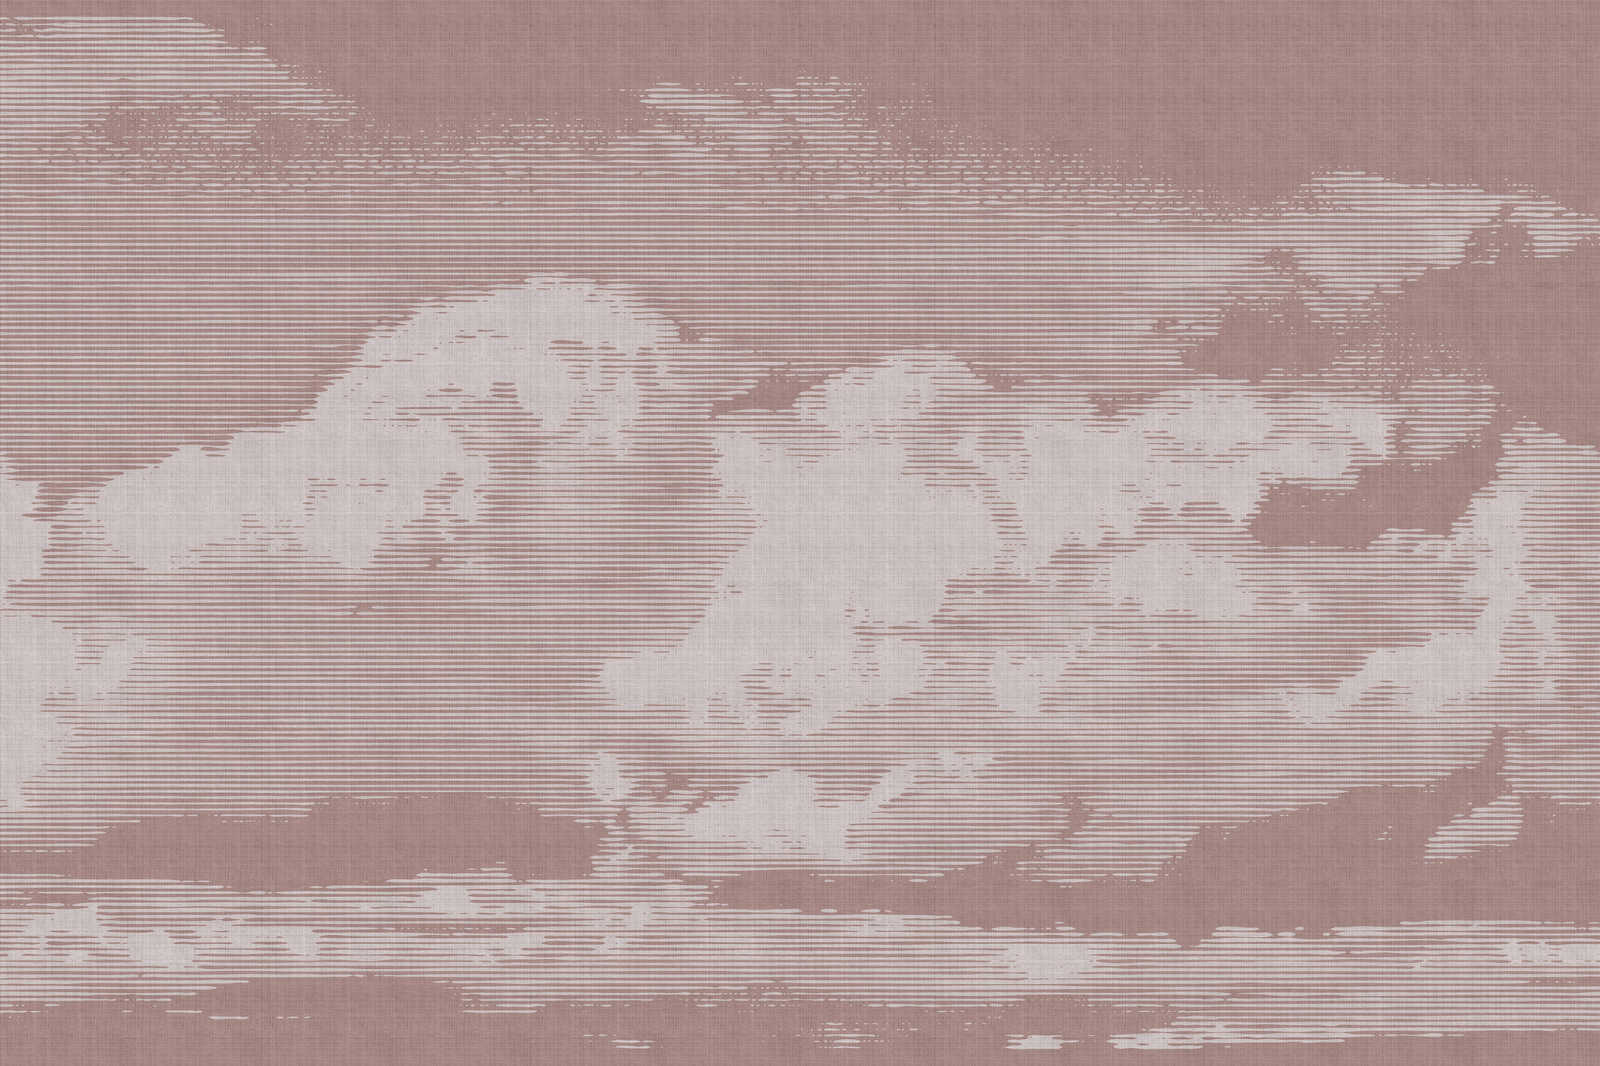             Nuvole 3 - Quadro su tela con motivo a nuvole - Aspetto naturale del lino - 0,90 m x 0,60 m
        